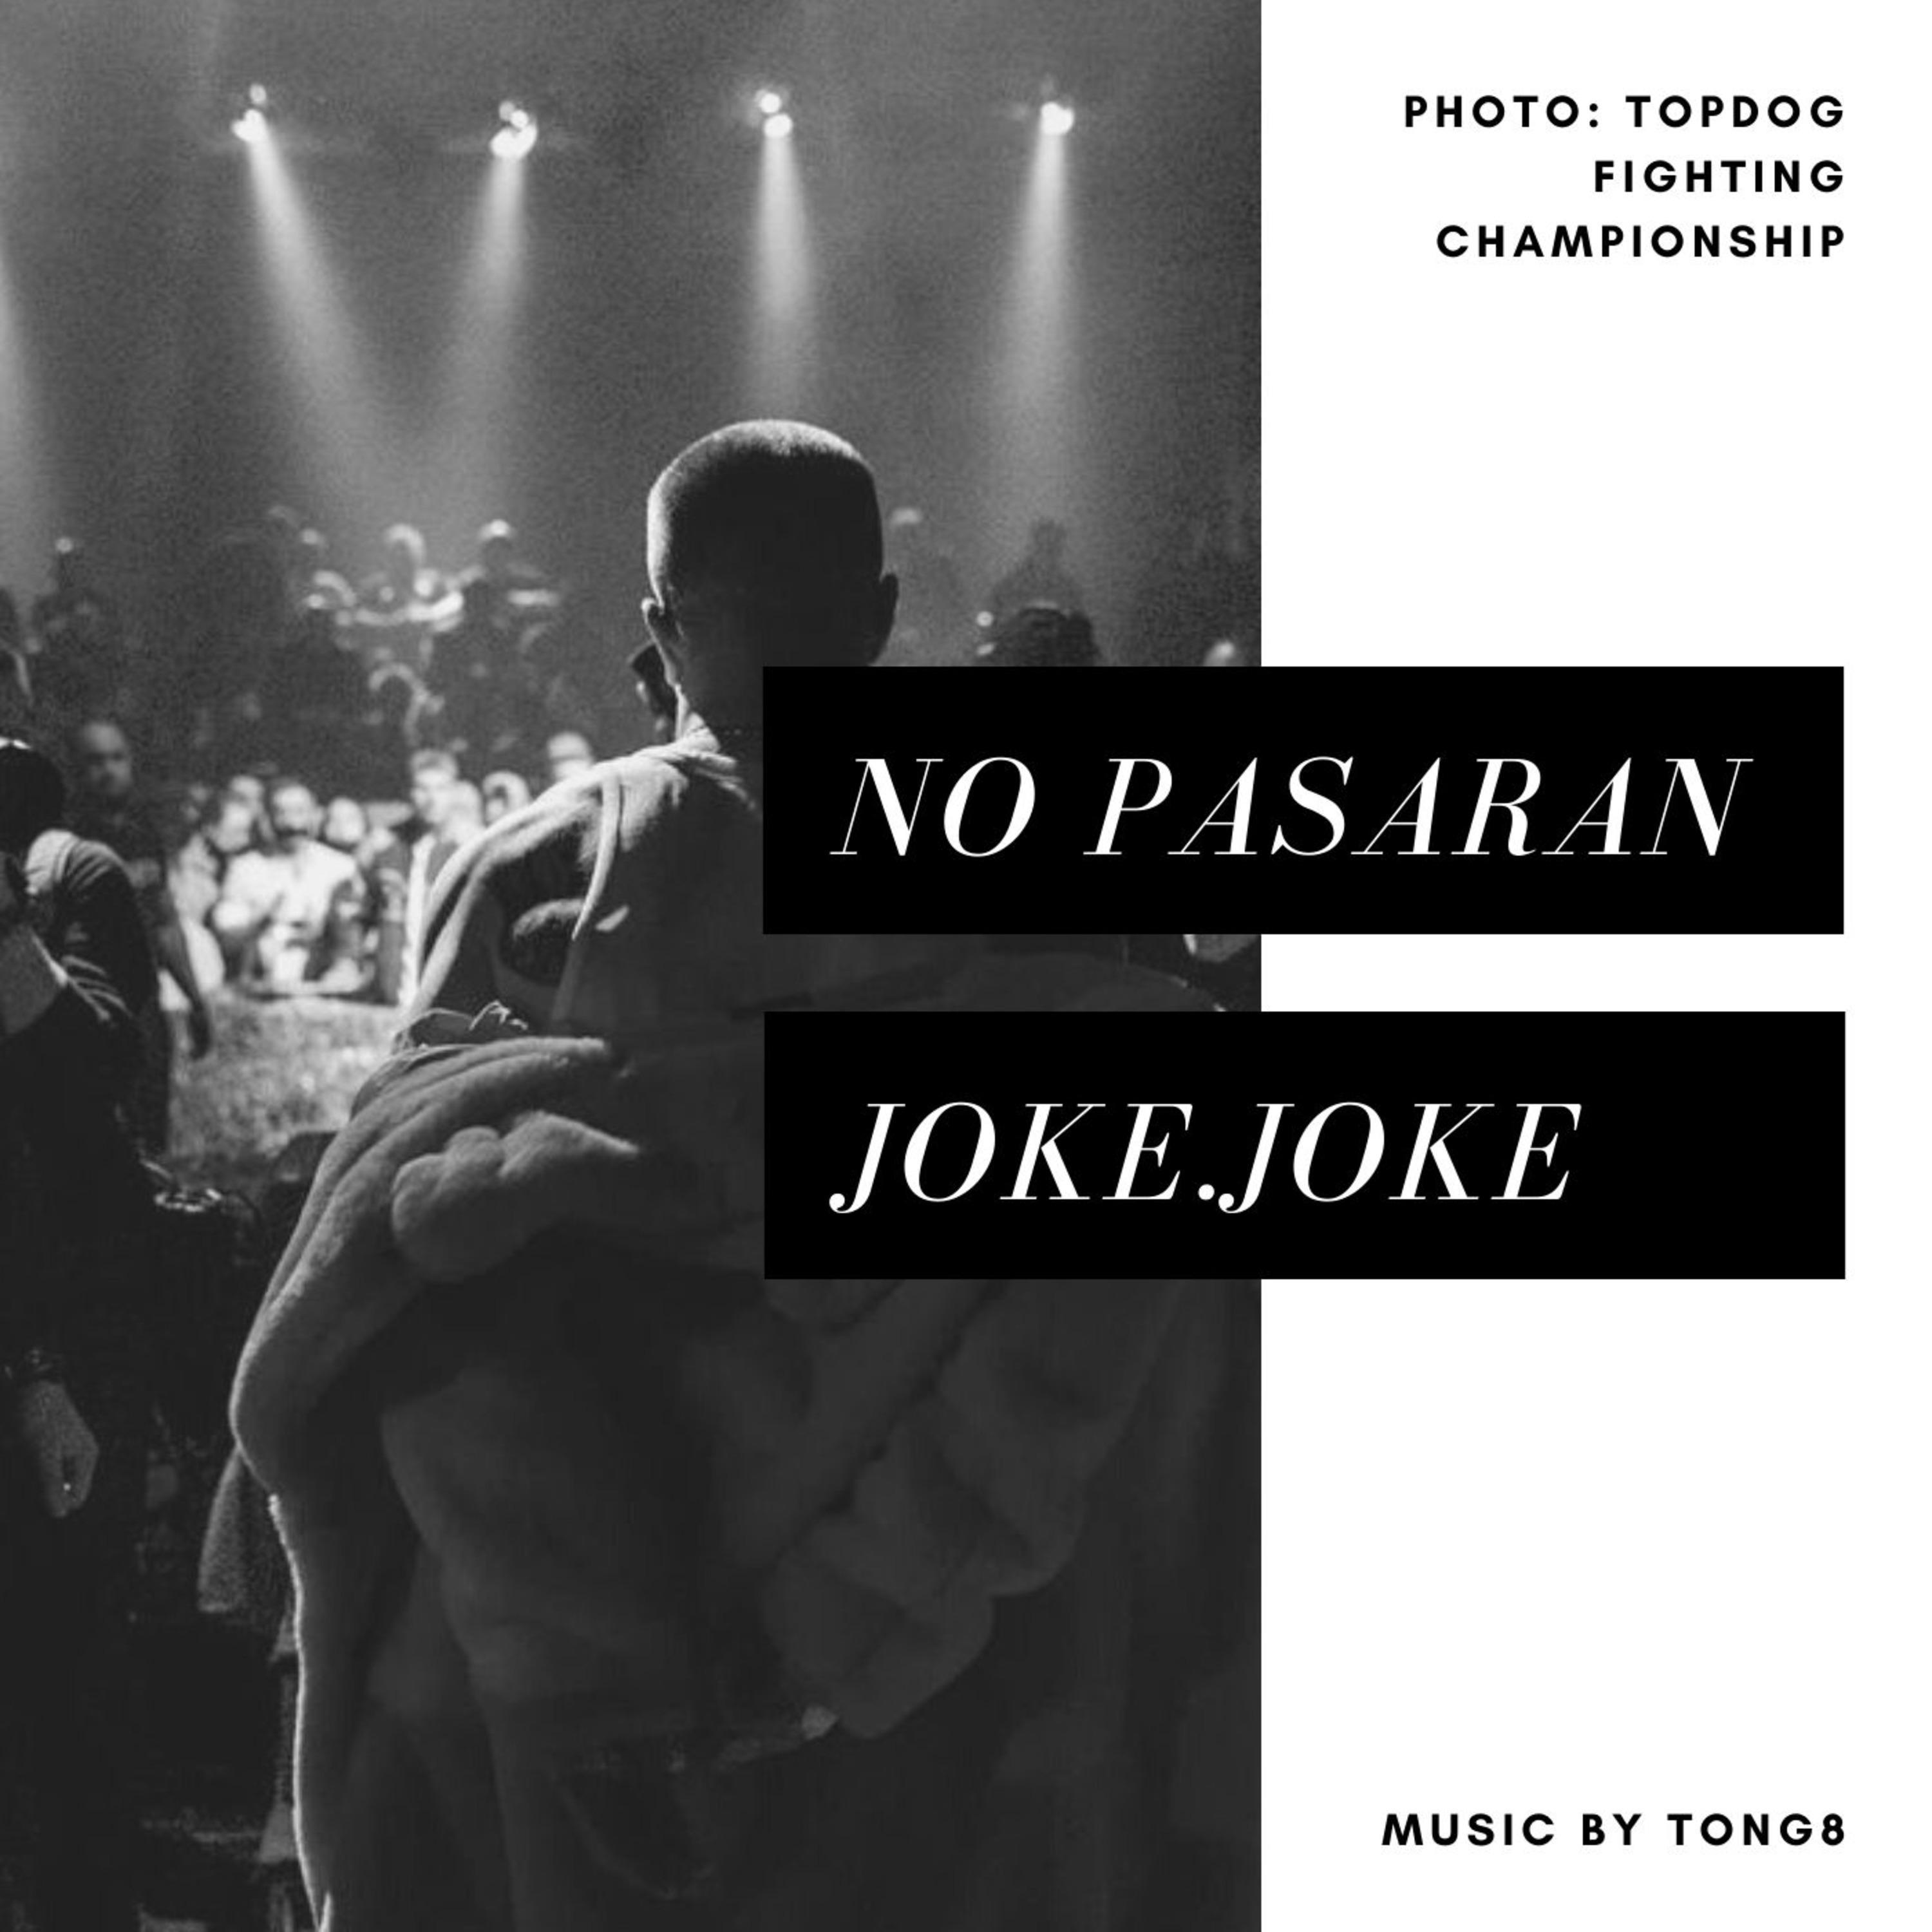 Tong8 - Joke.Joke